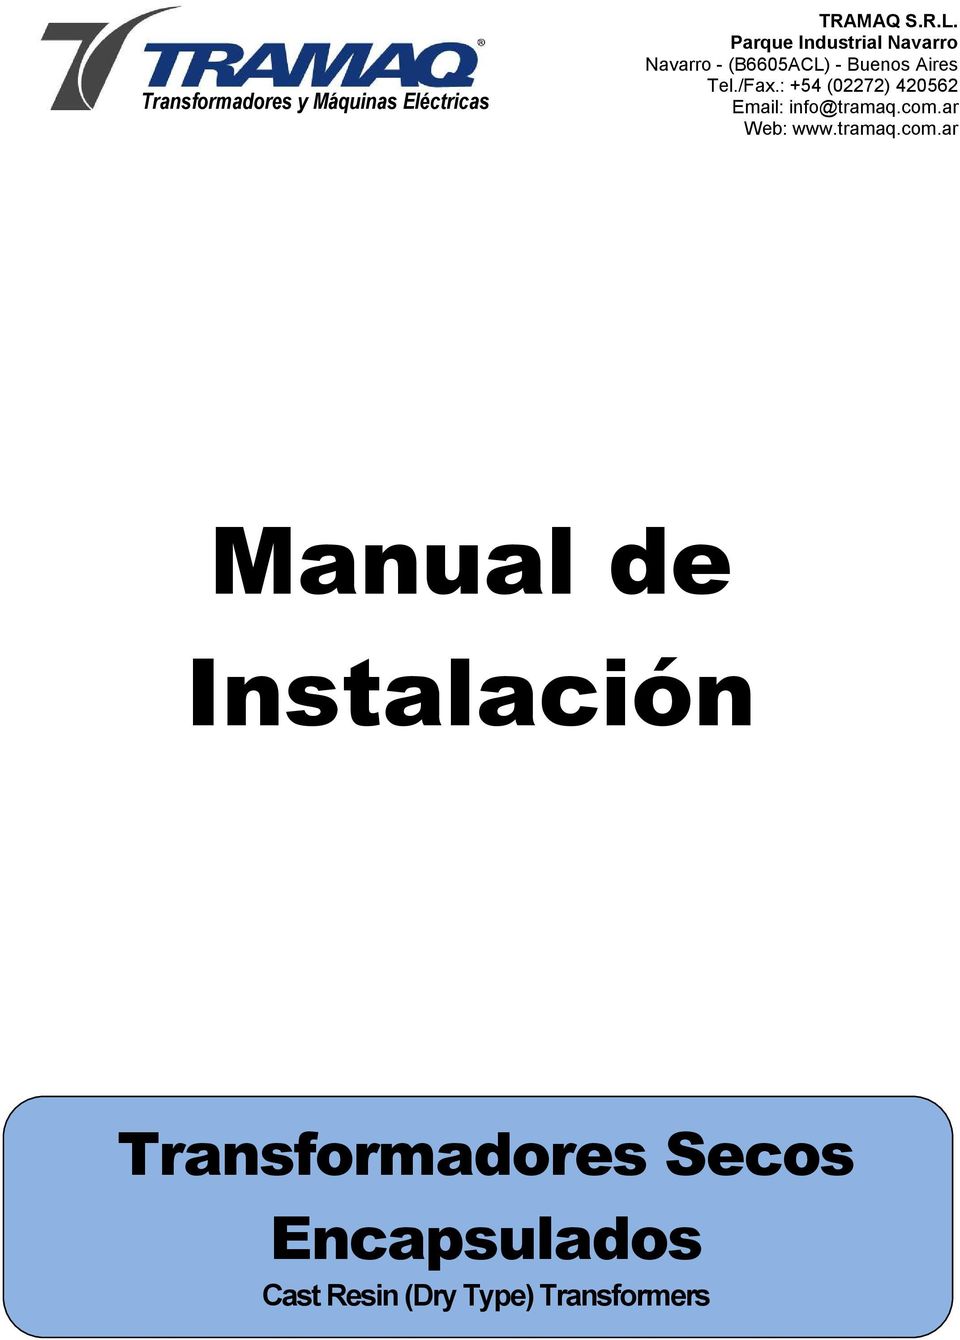 Parque Industrial Navarro Manual de